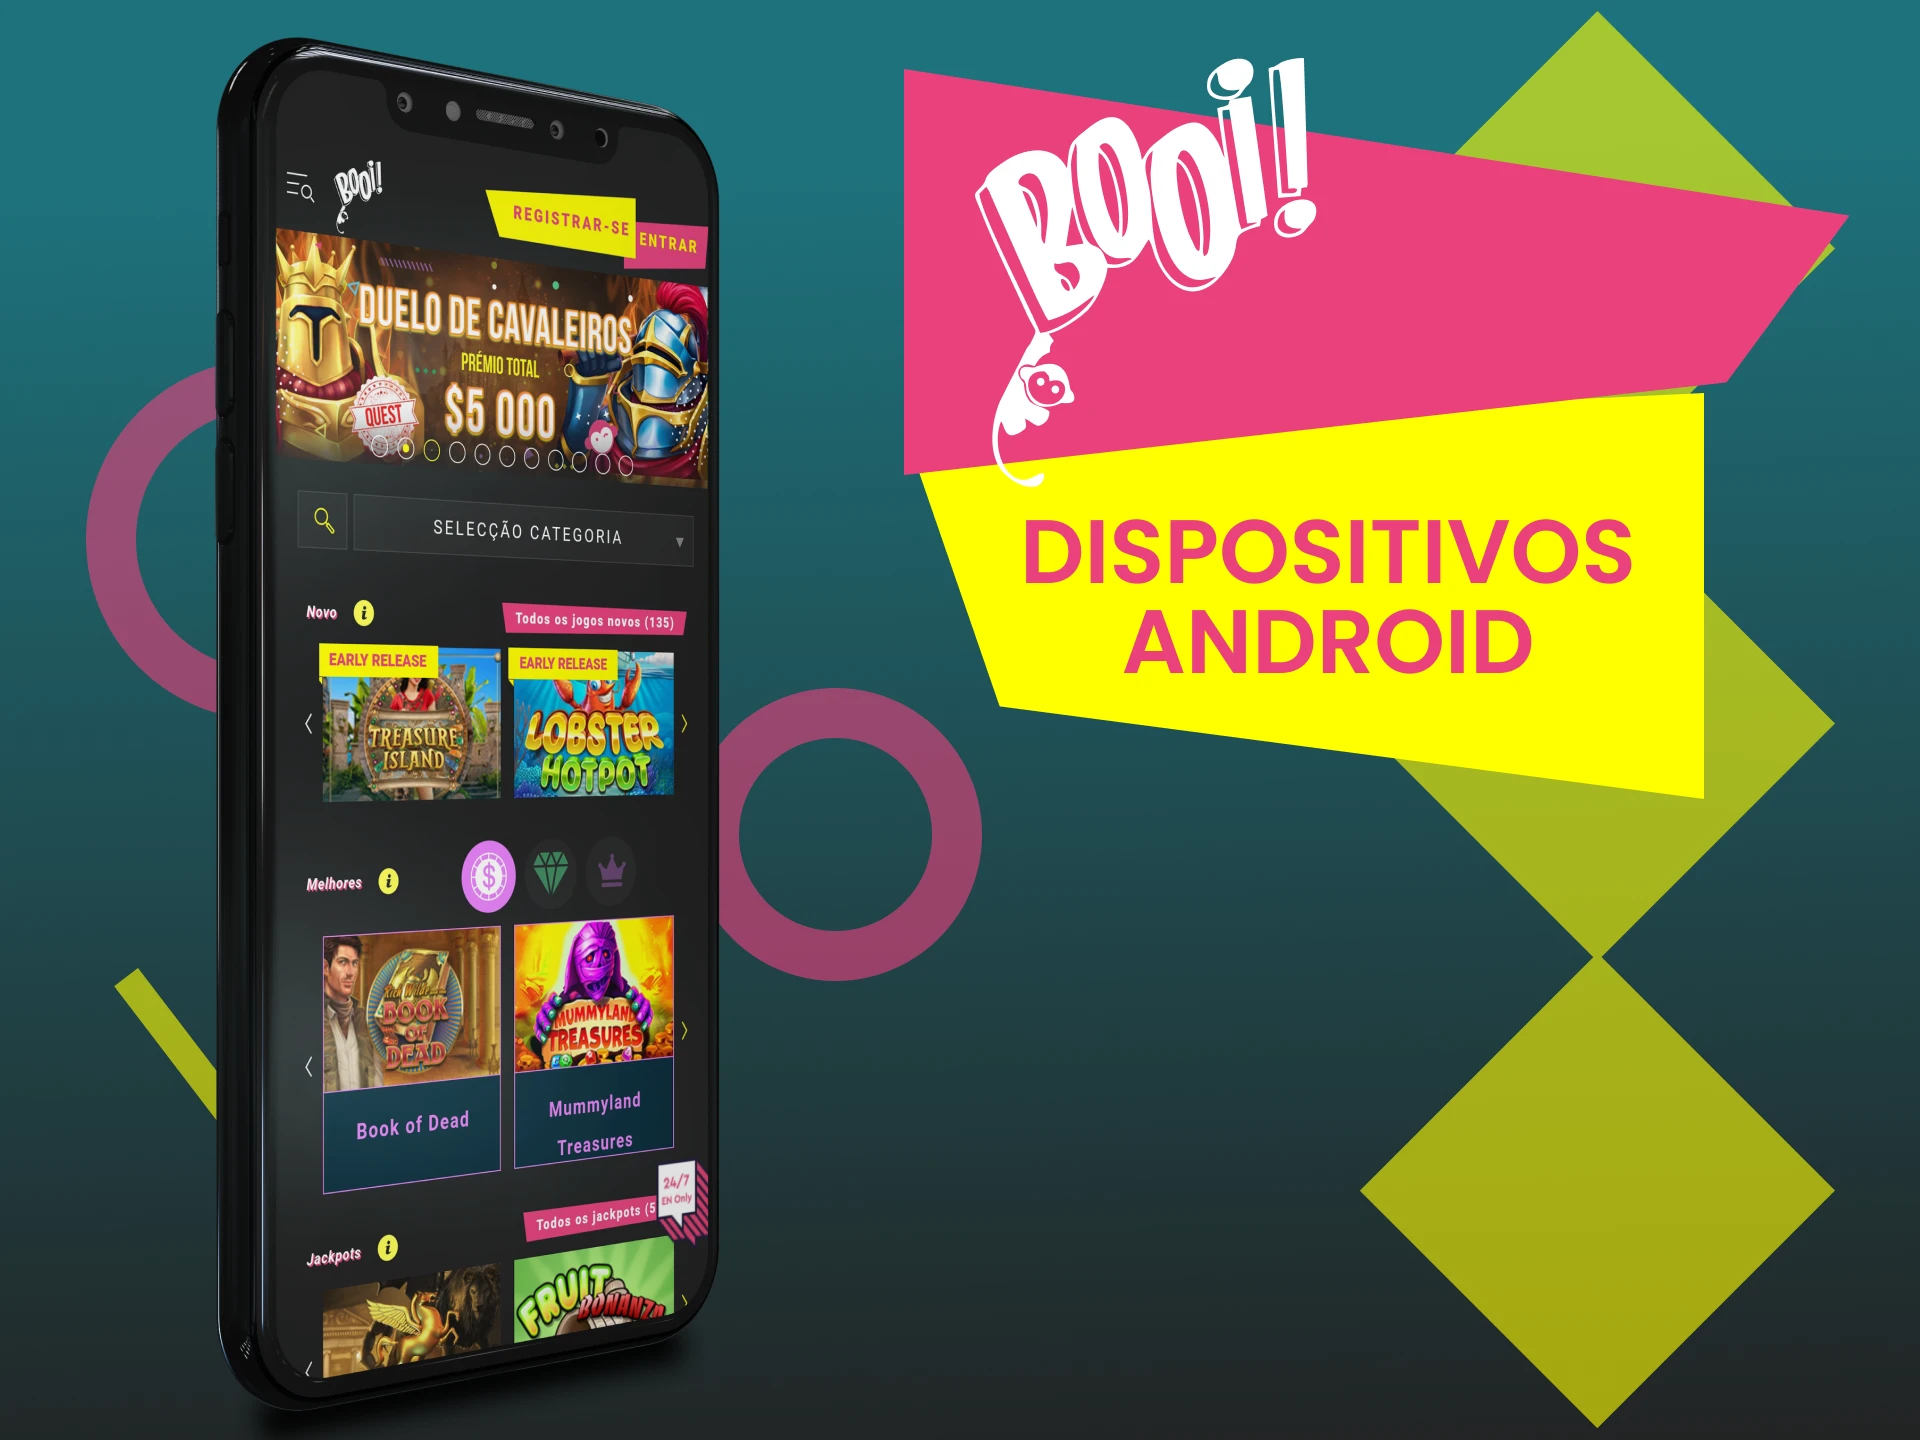 Dispositivos compatíveis com o app Booi para Android.